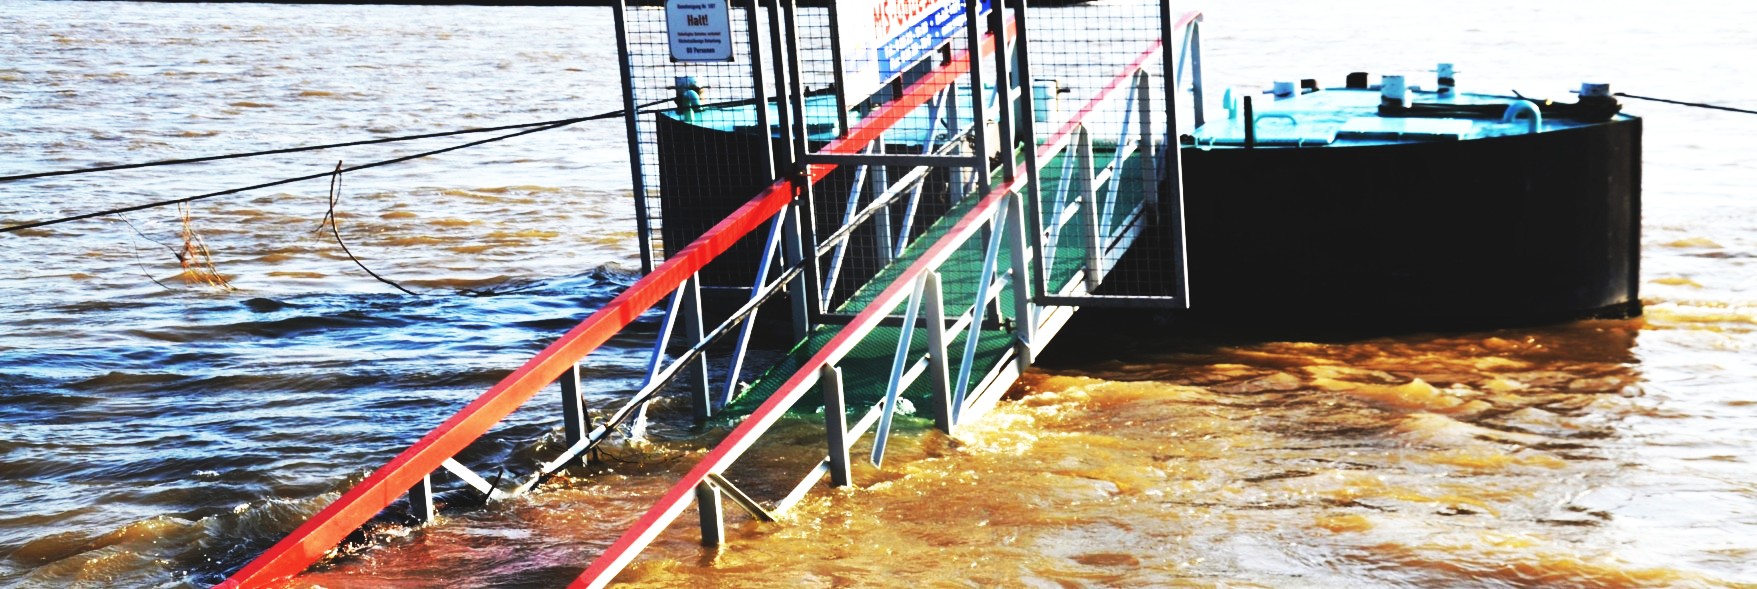 Überflutete Anlegestelle am Rhein- Zugang unter Wasser